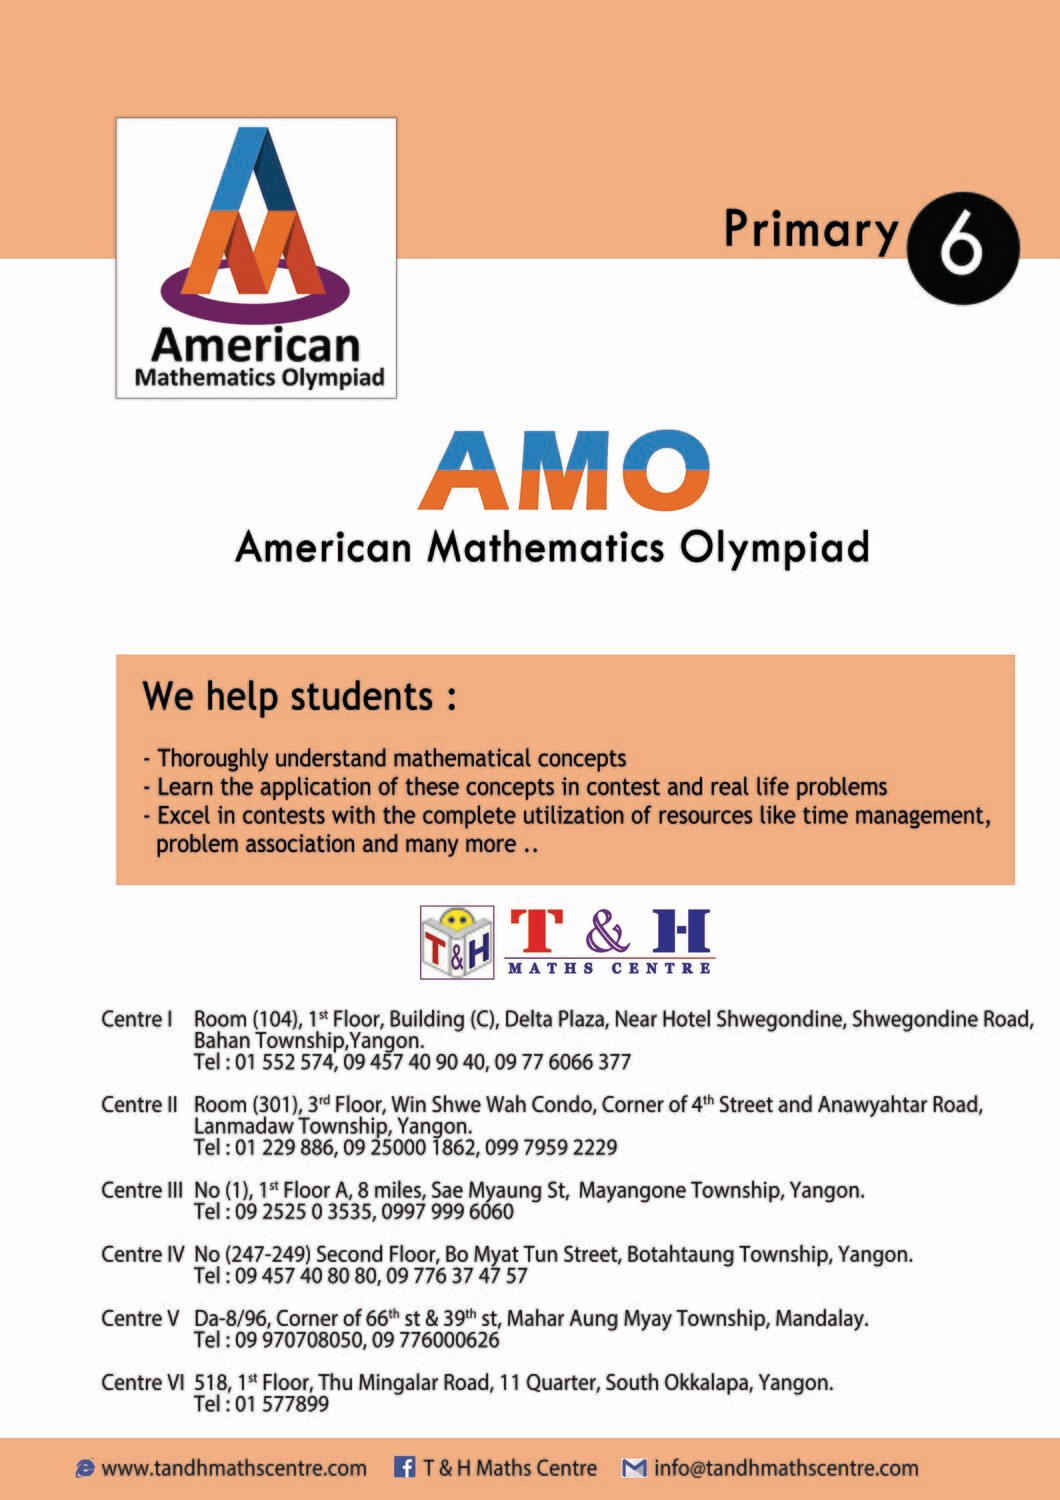 AMO - Primary 6 (2013 to 2018)